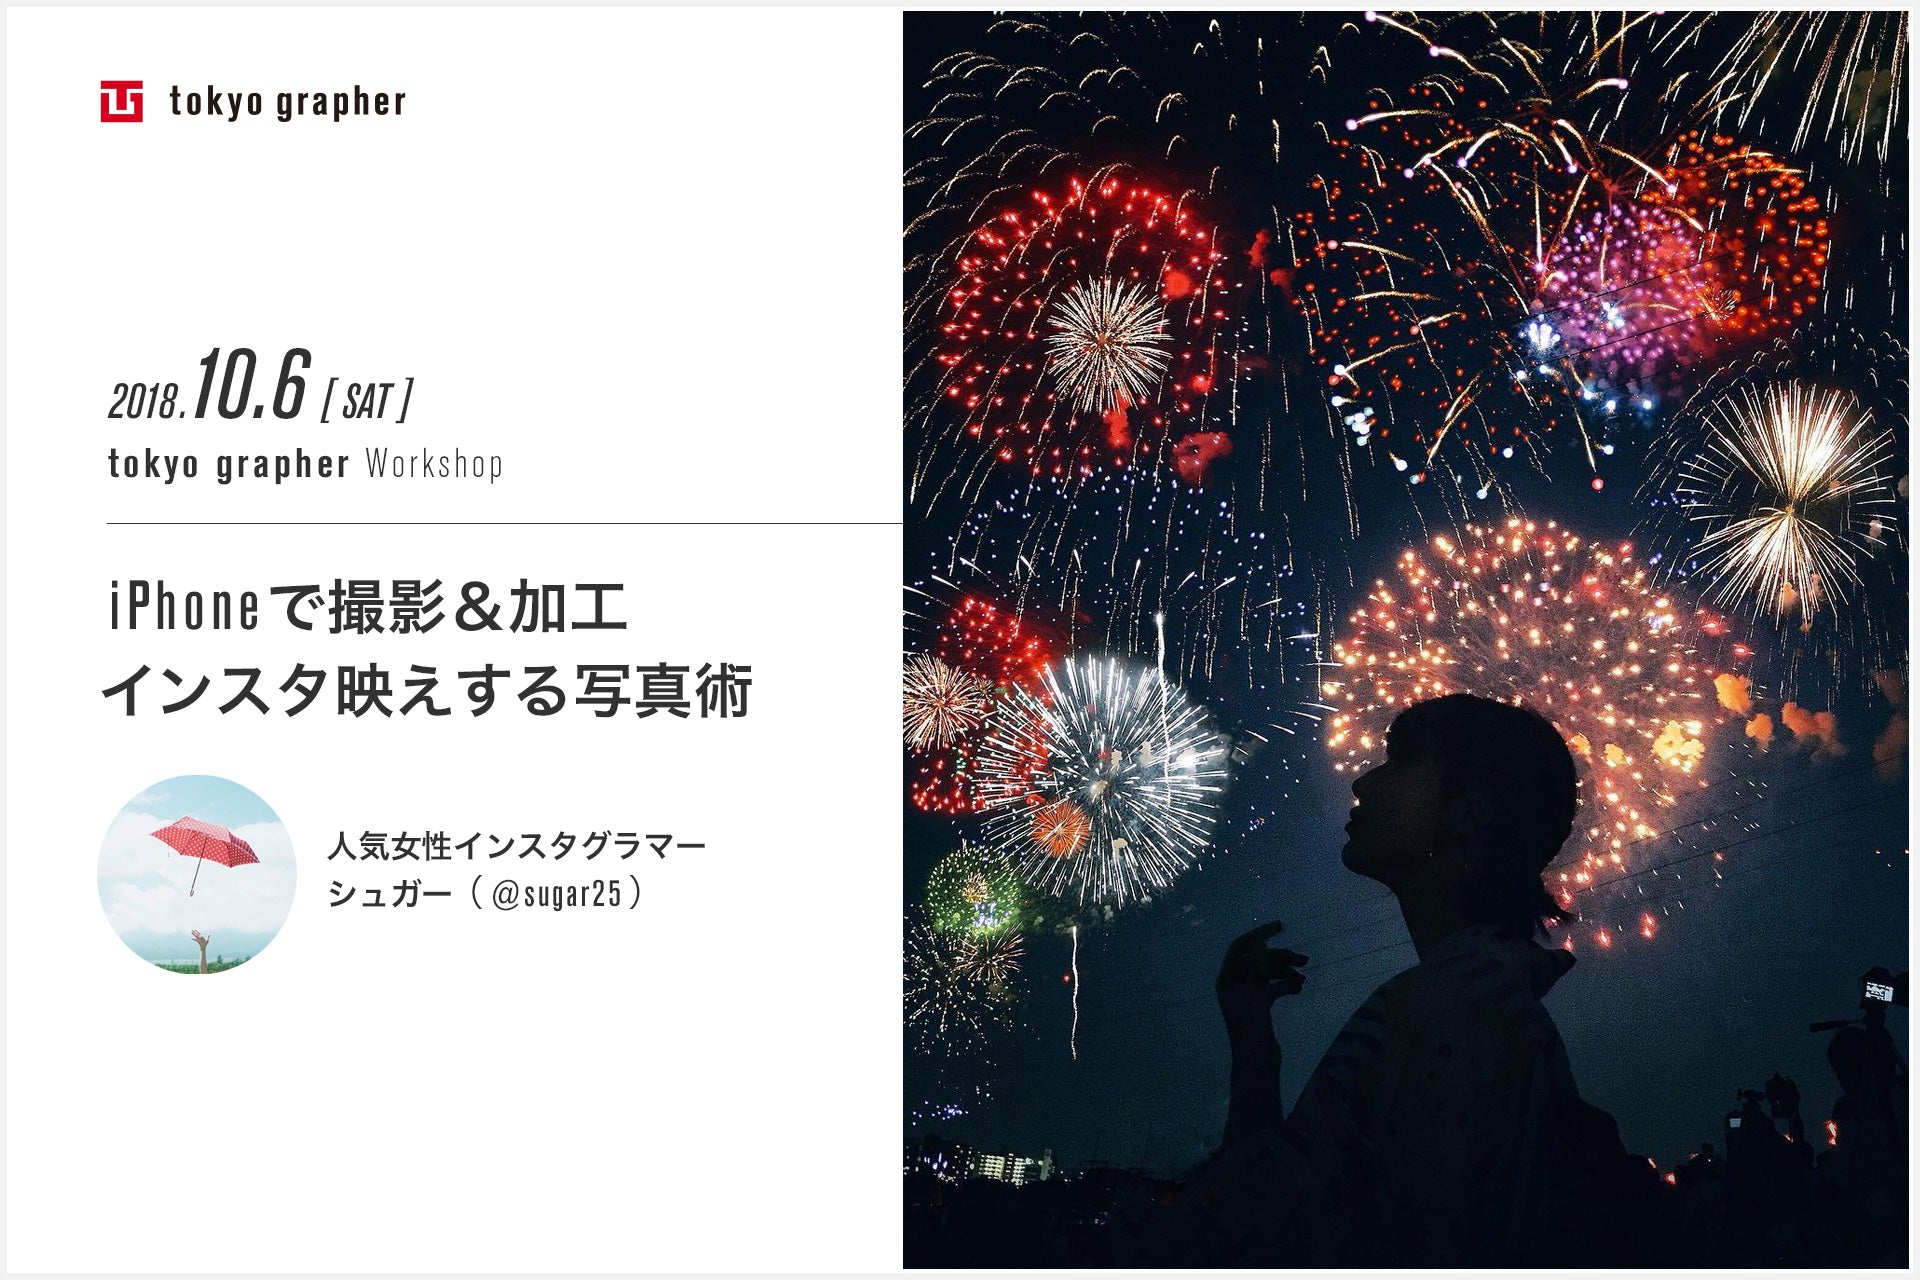 ワークショップ Iphoneで撮影 加工 インスタ映えする写真術 の開催のお知らせ Tokyo Grapher